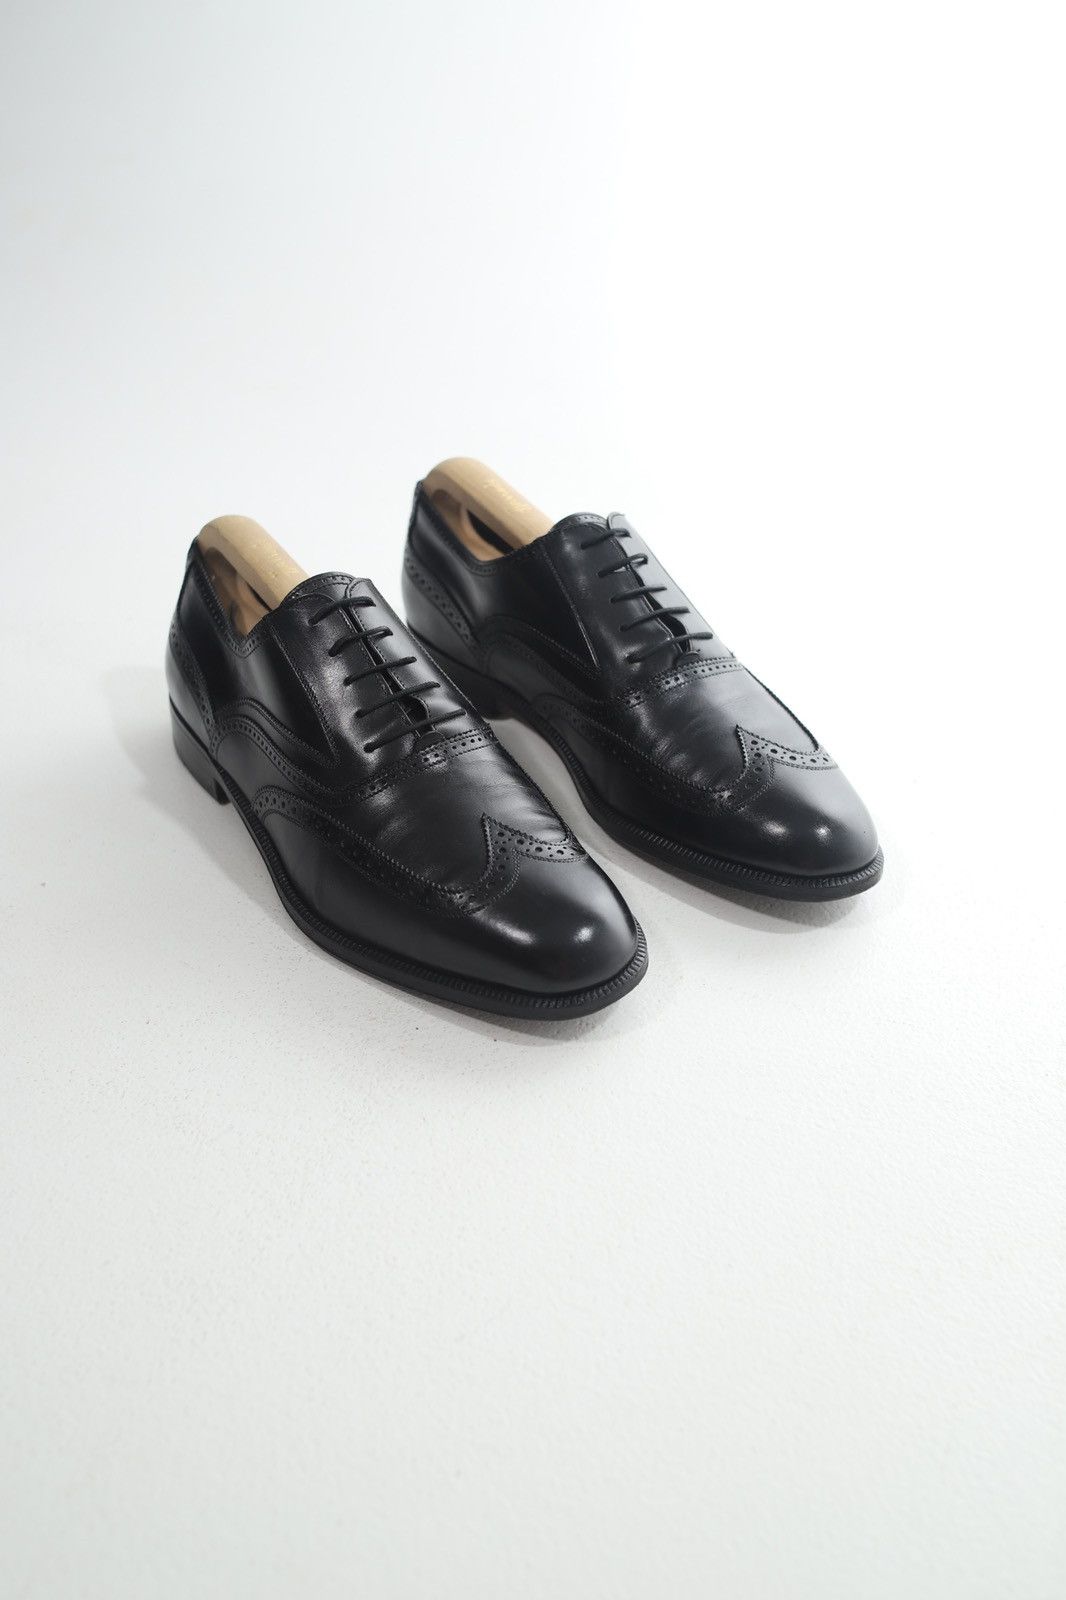 Salvatore Ferragamo Salvatore Ferragamo Oxfords Leather Shoes | Grailed